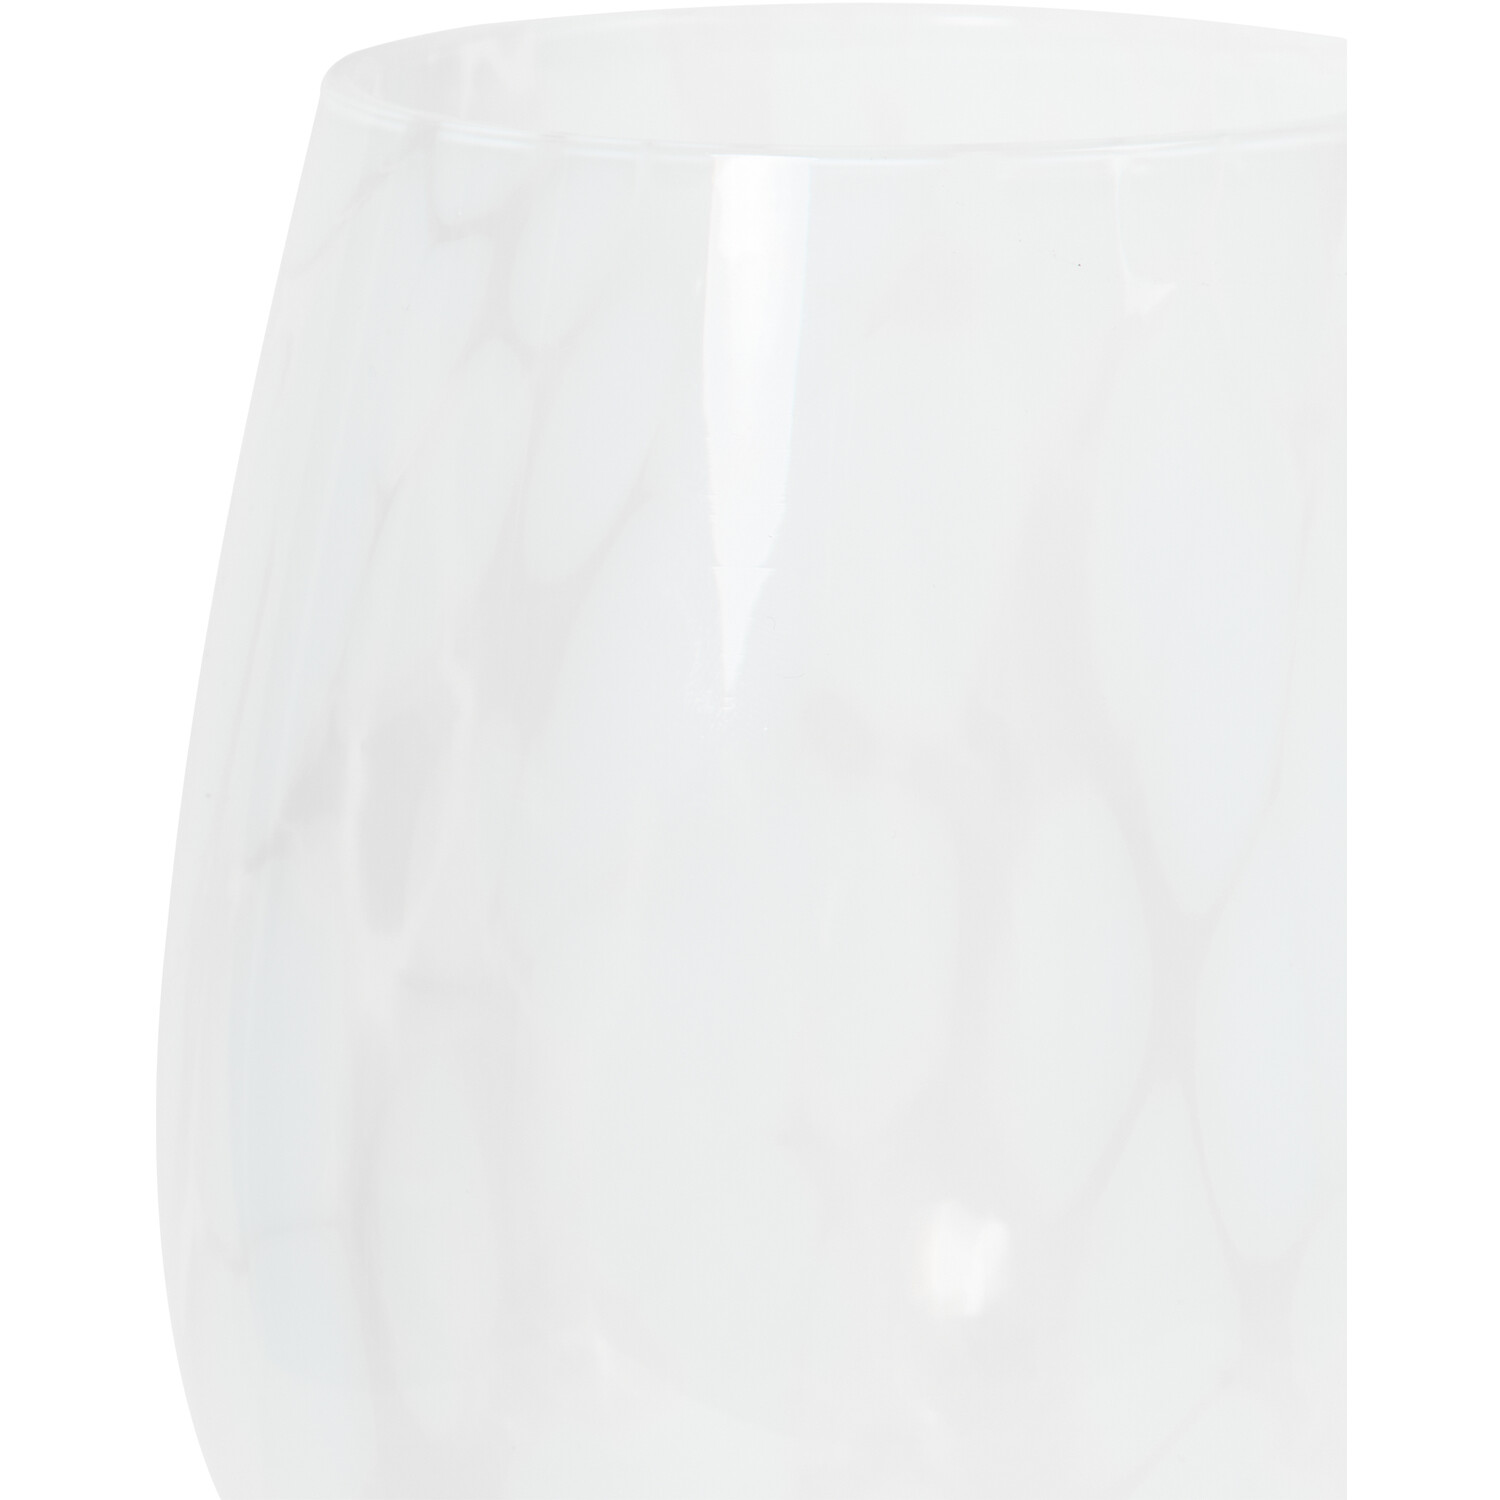 Confetti Wine Glass - White Image 2